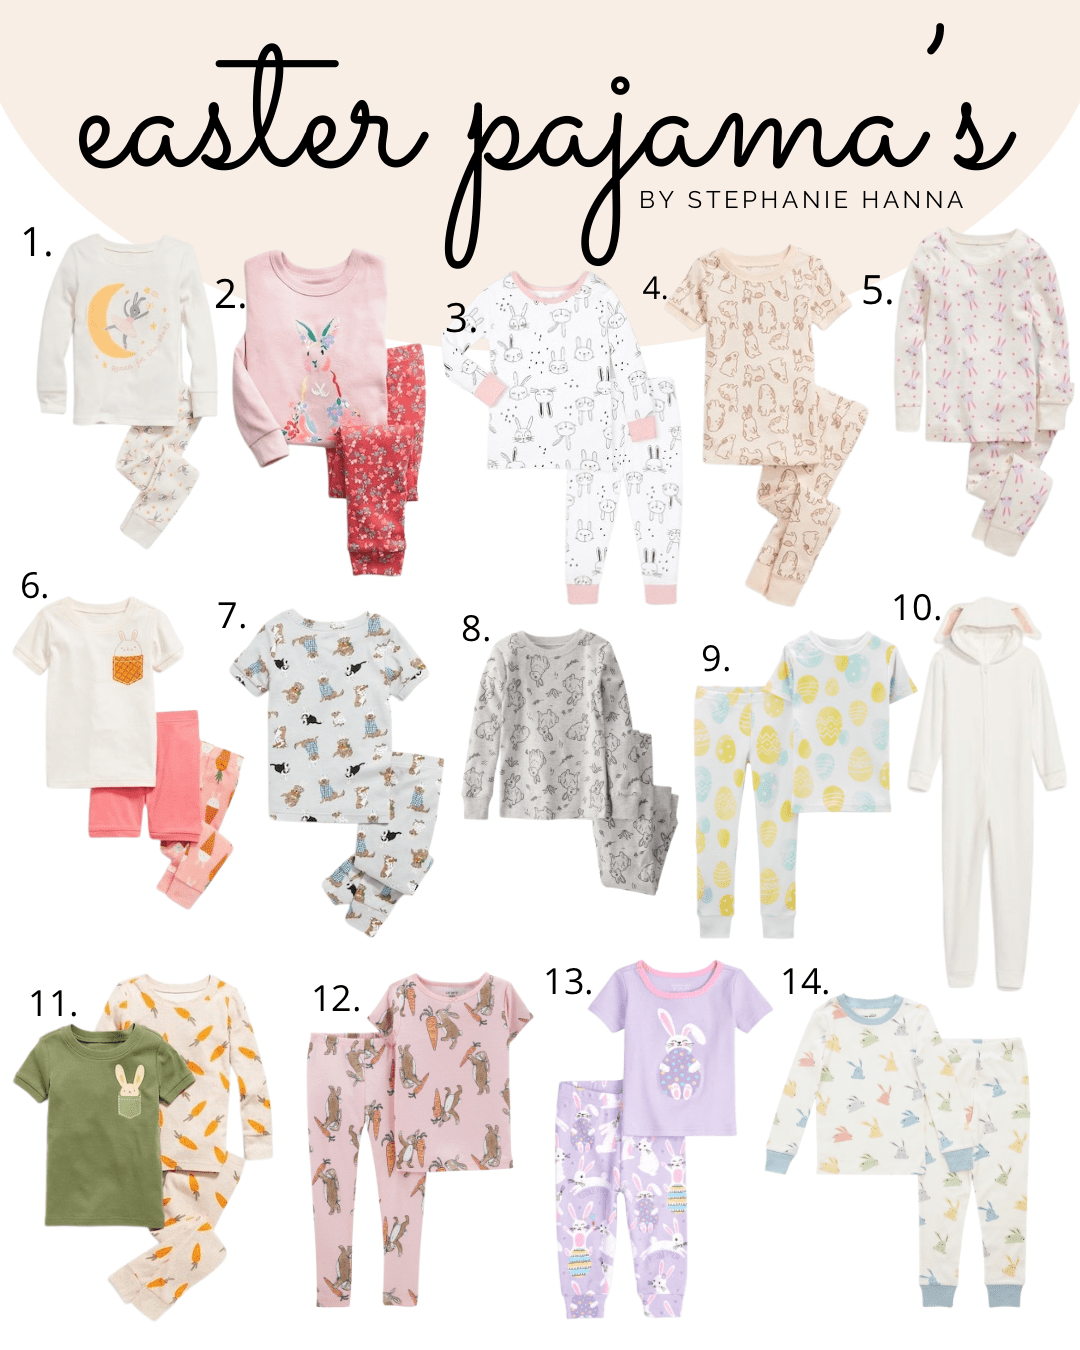 easter pajamas